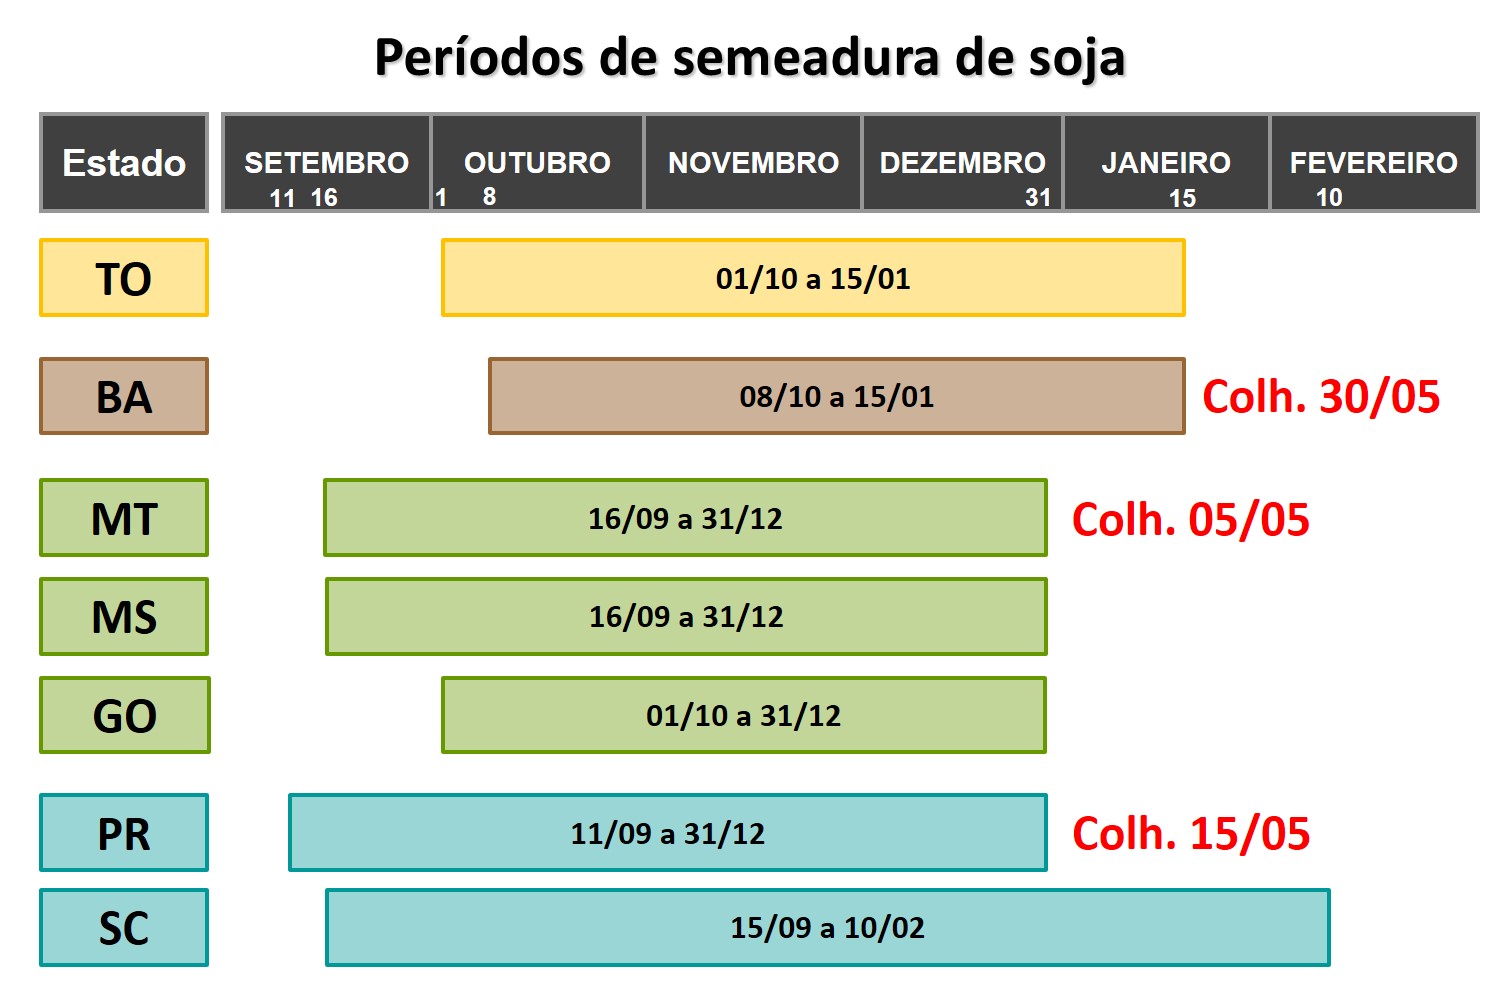 Figura 2 – Calendário de período de semeadura da soja em estados brasileiros.